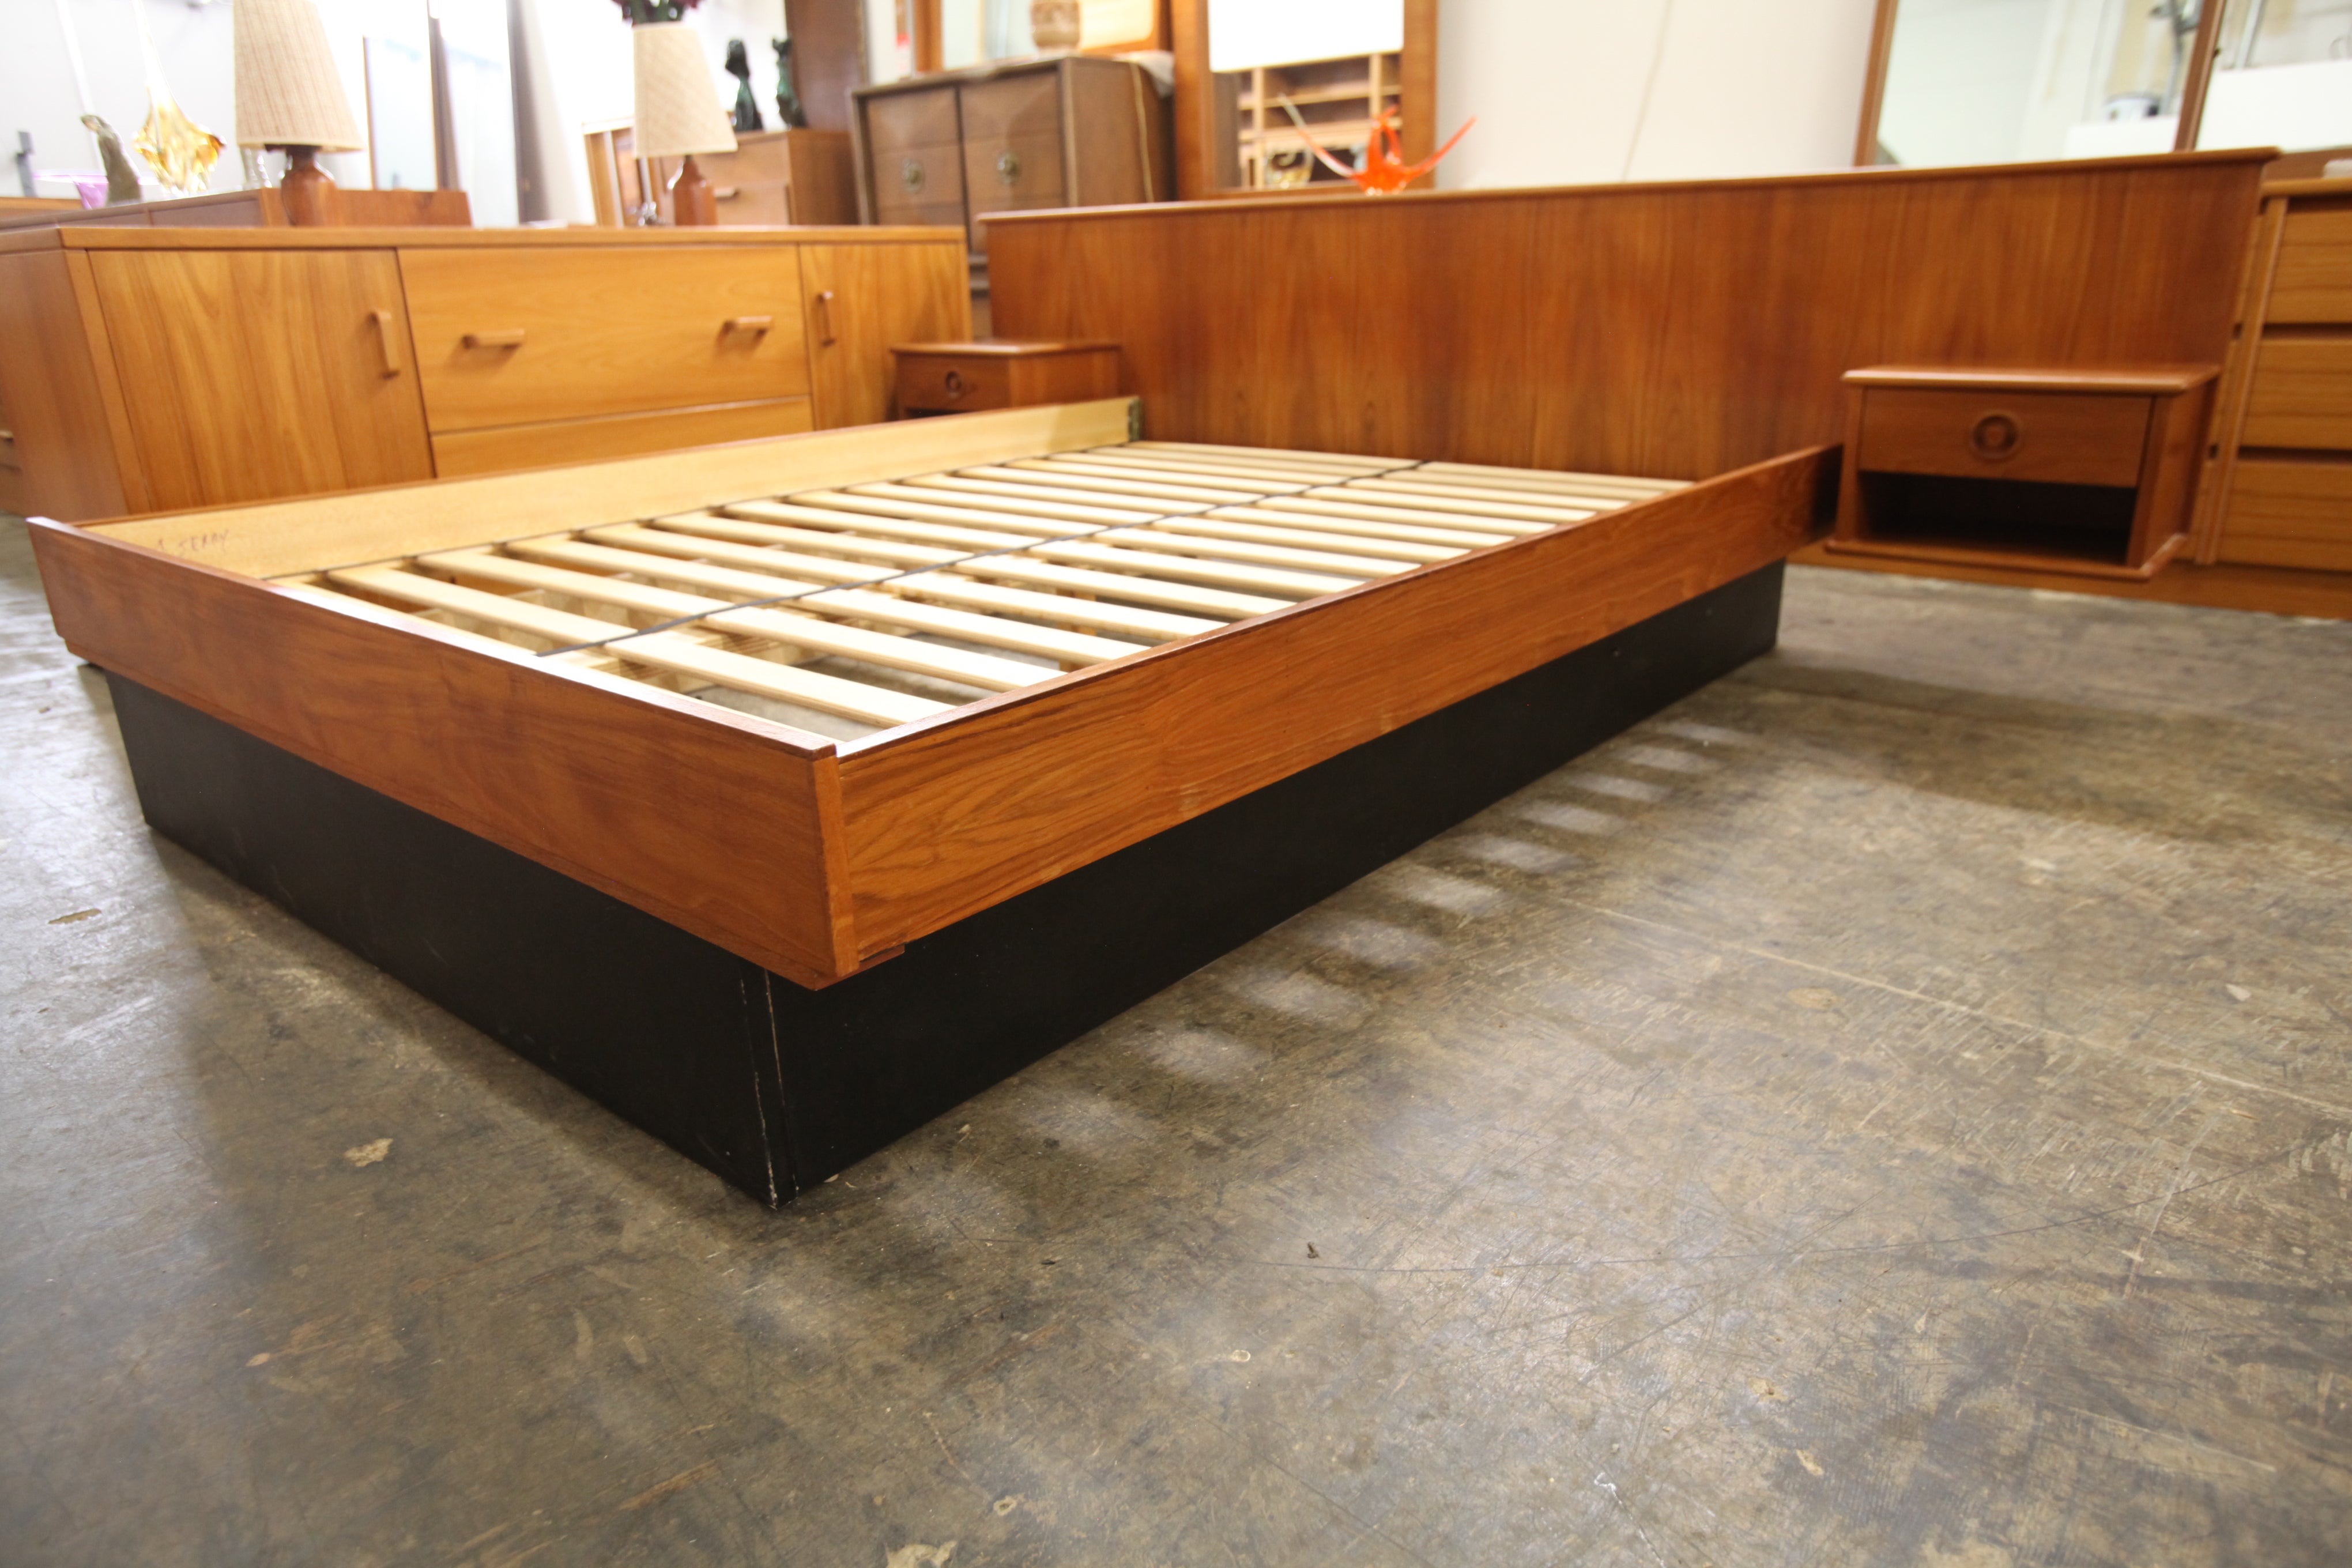 Vintage Teak Queen Size Bed w/ Floating Nightstands (97.5"W x 30"H)